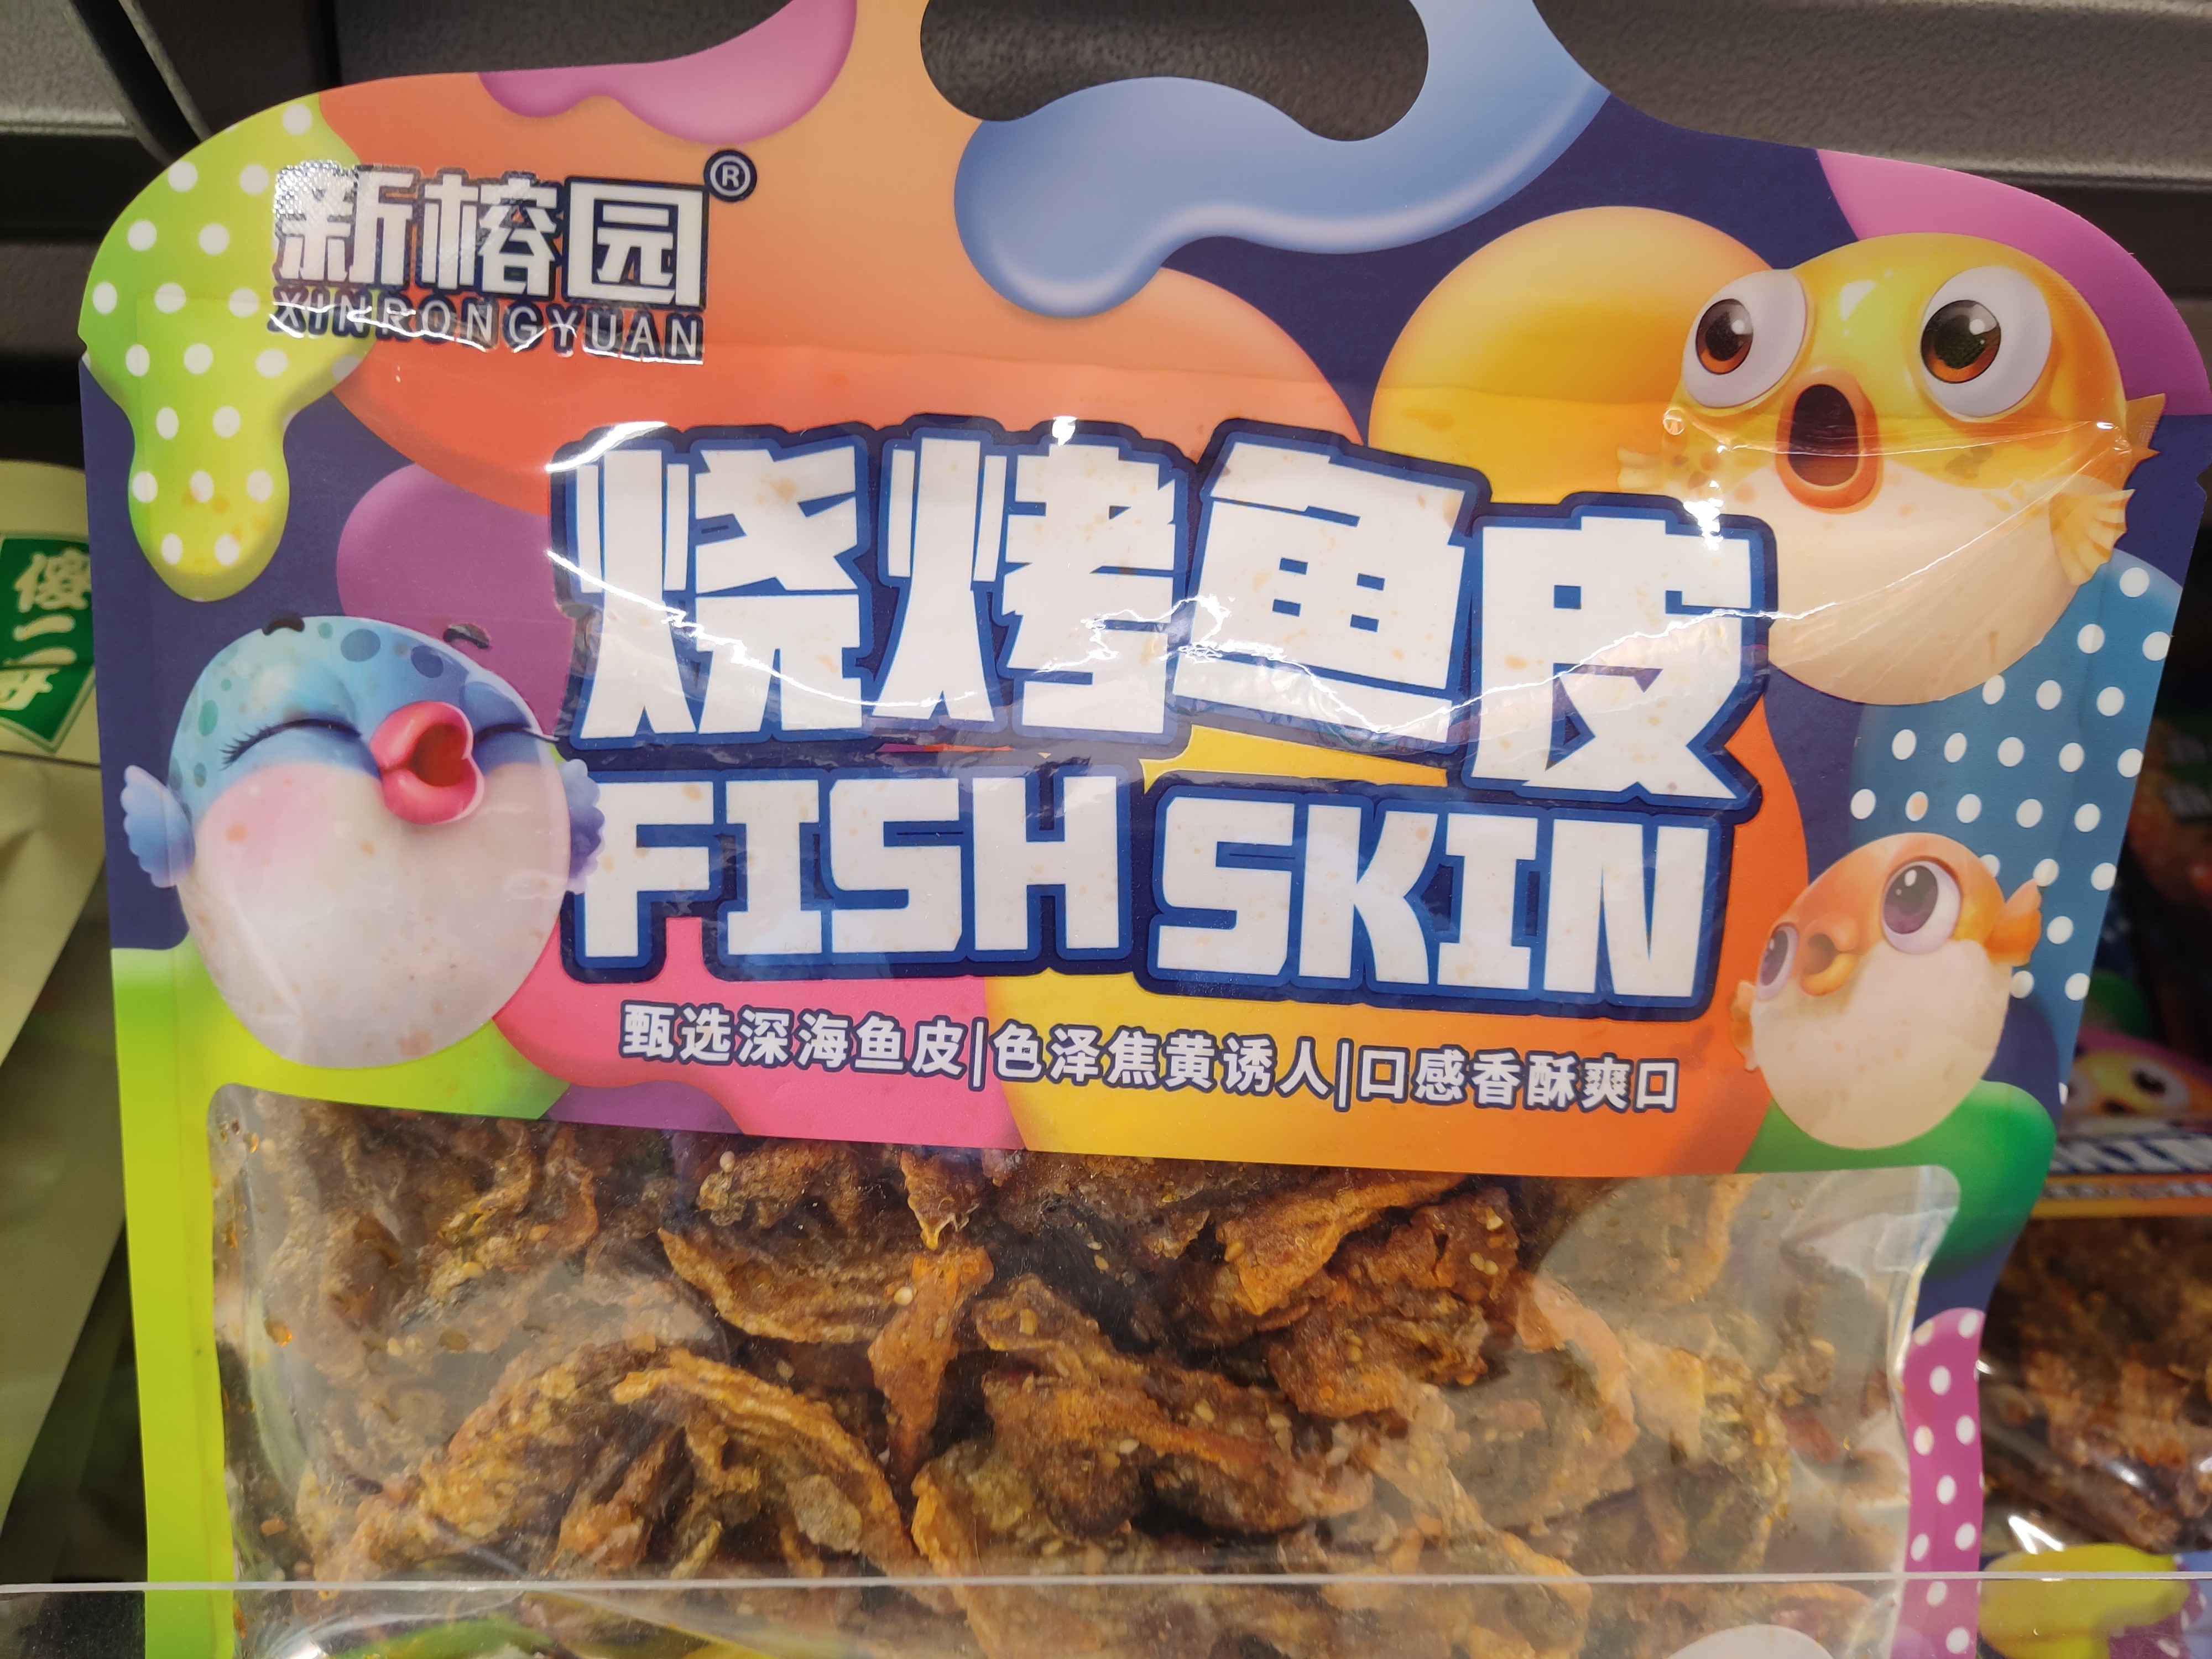 fish-skin-bbq-flavor